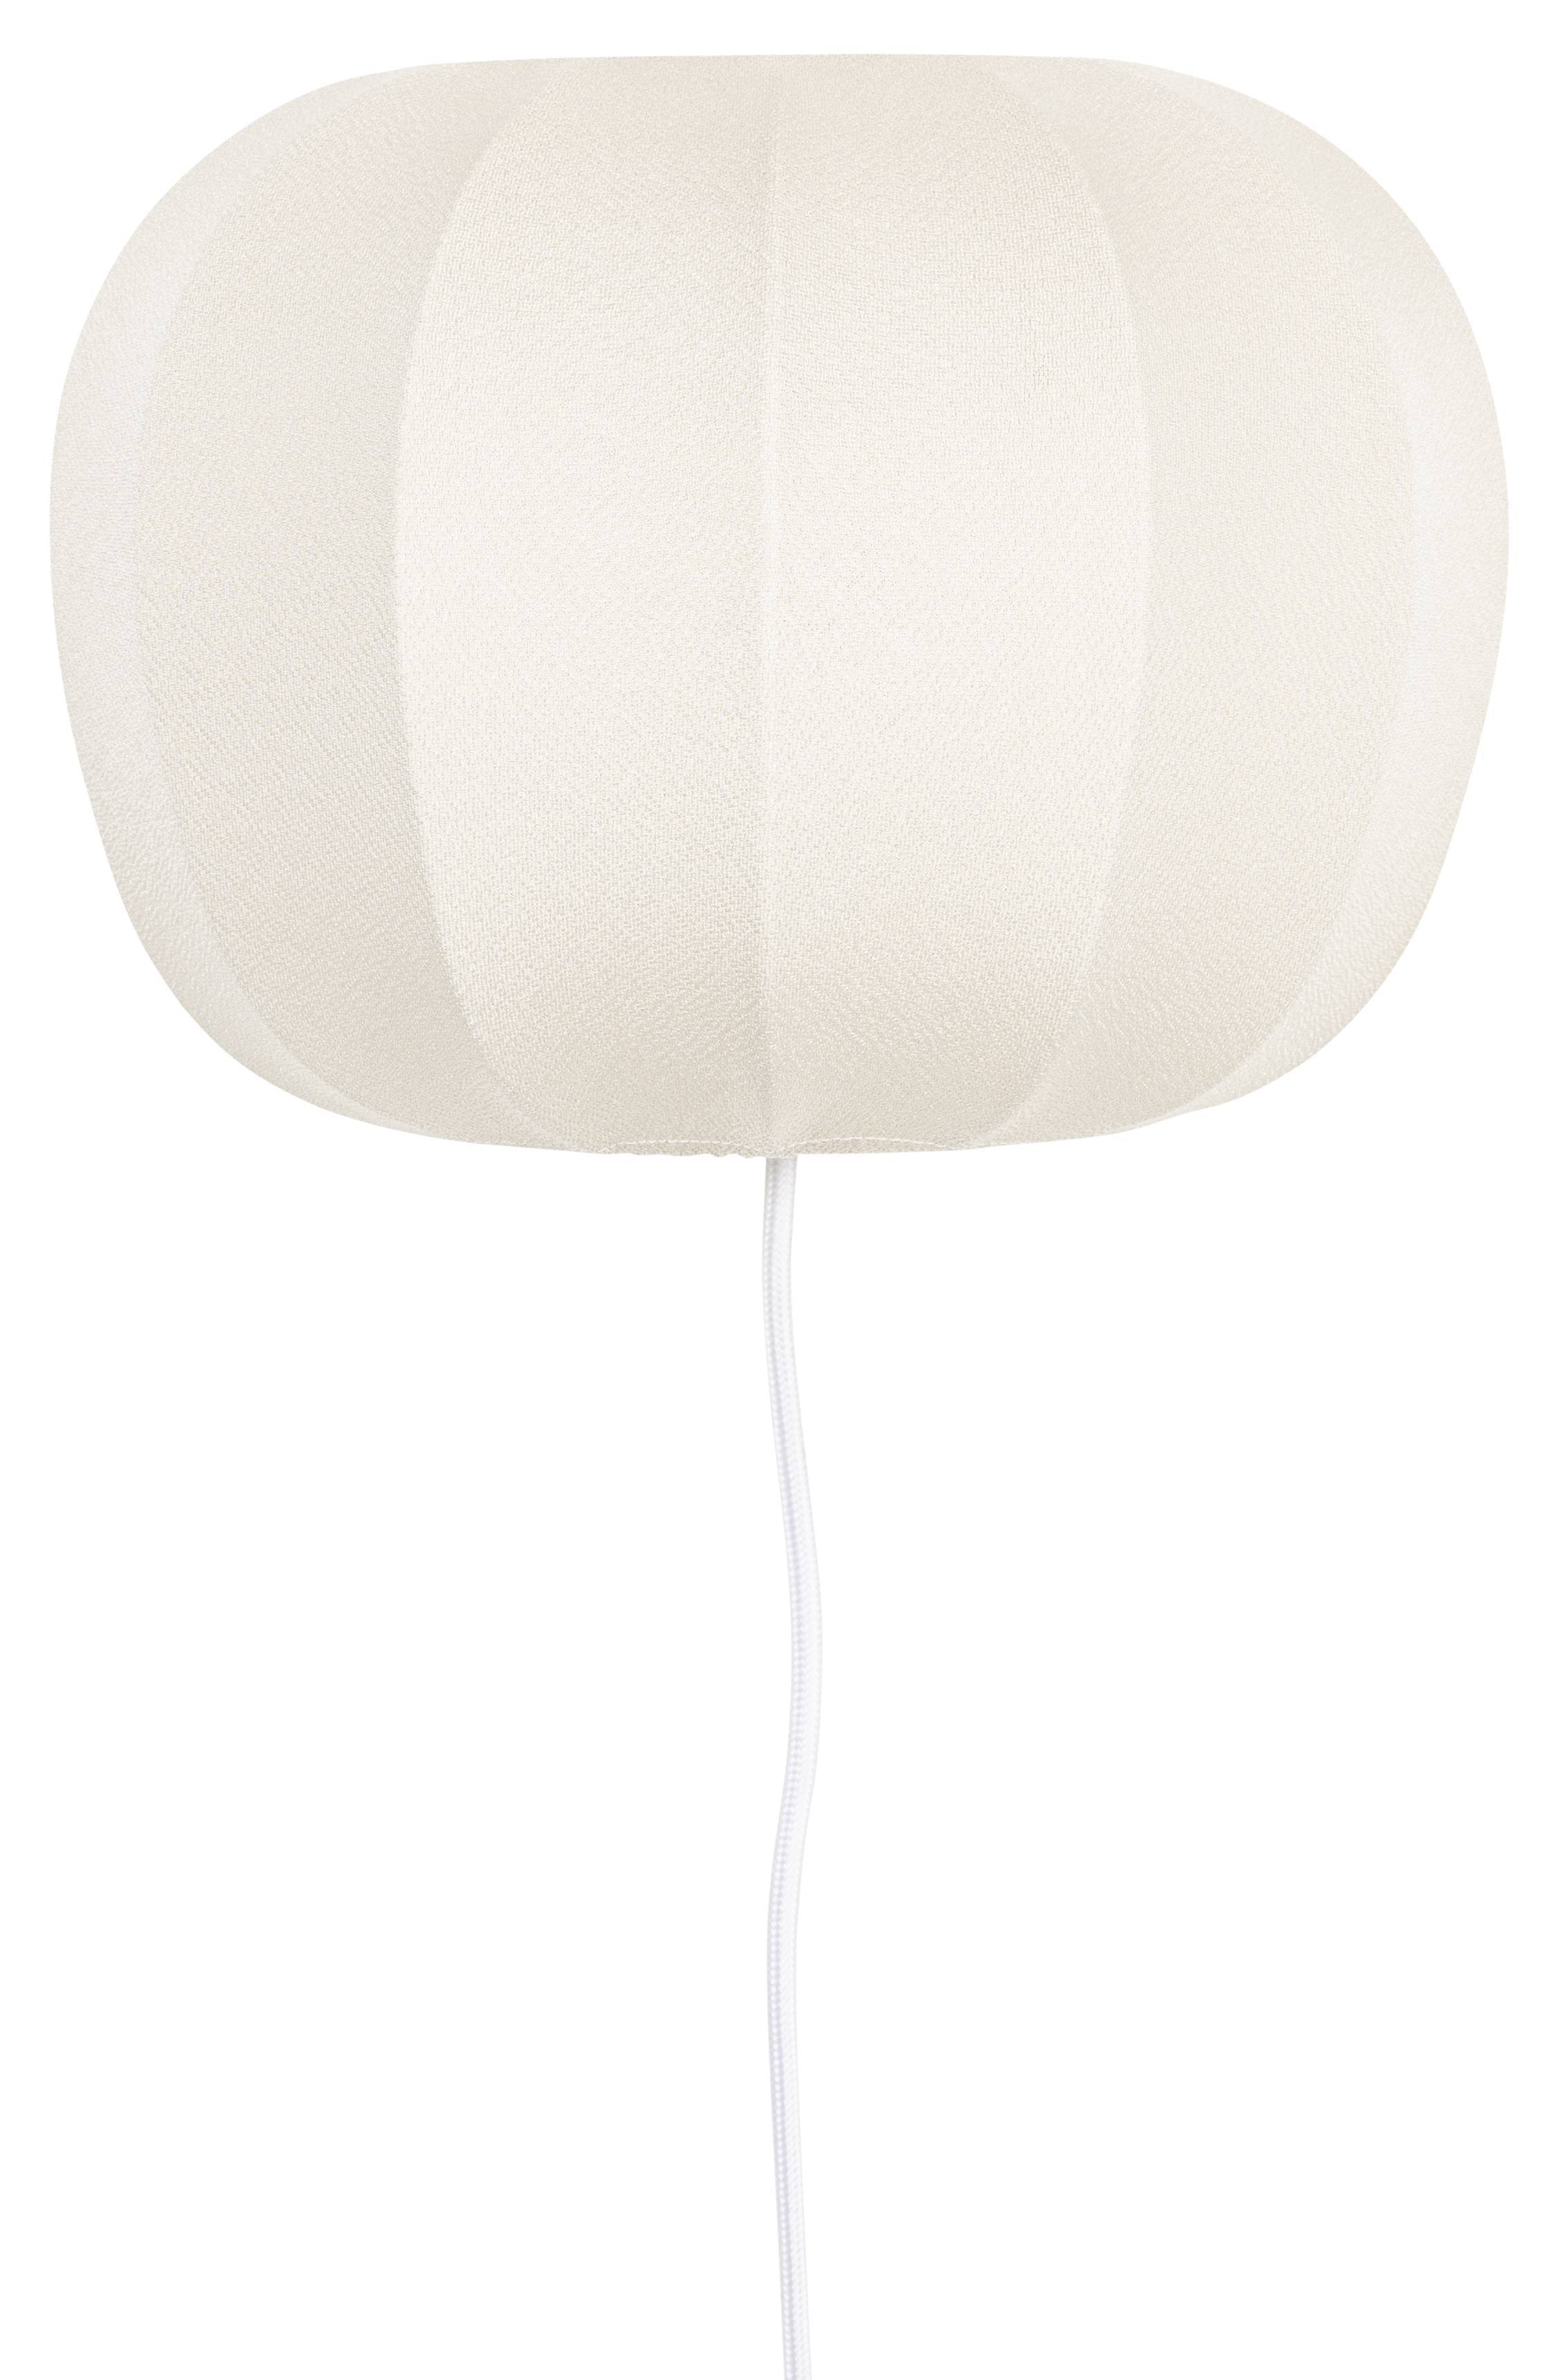 ZMH LED applique murale lampe de lit en tissu blanc lampe de